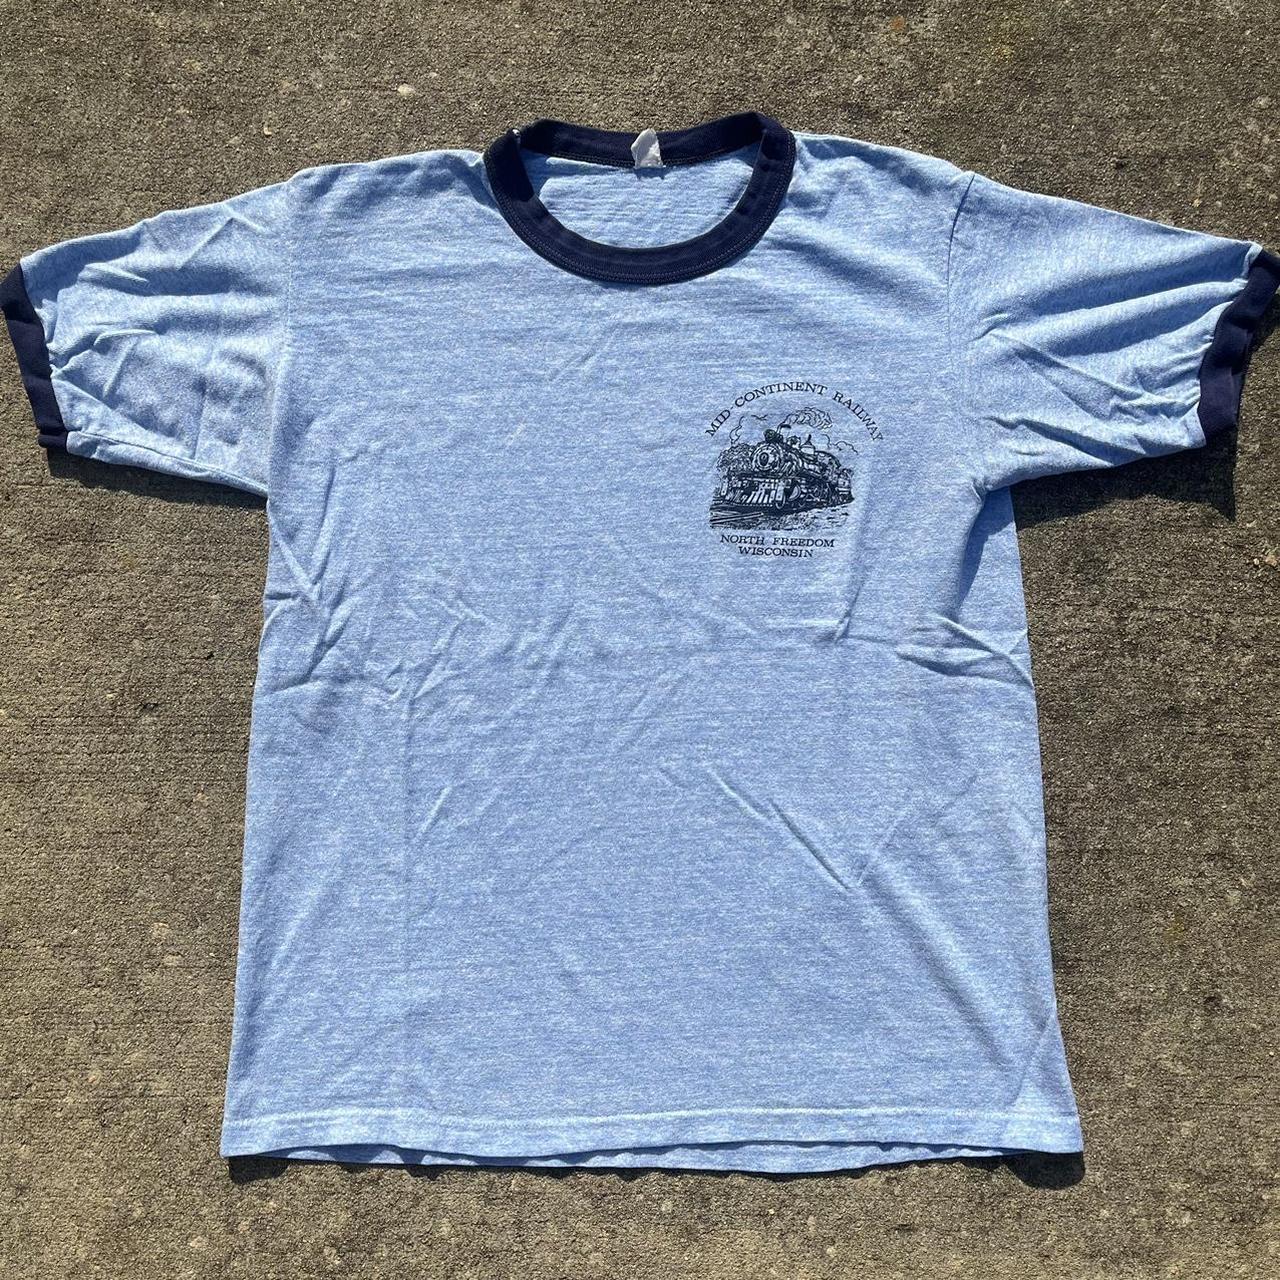 American Vintage Men's T-Shirt - Blue - L